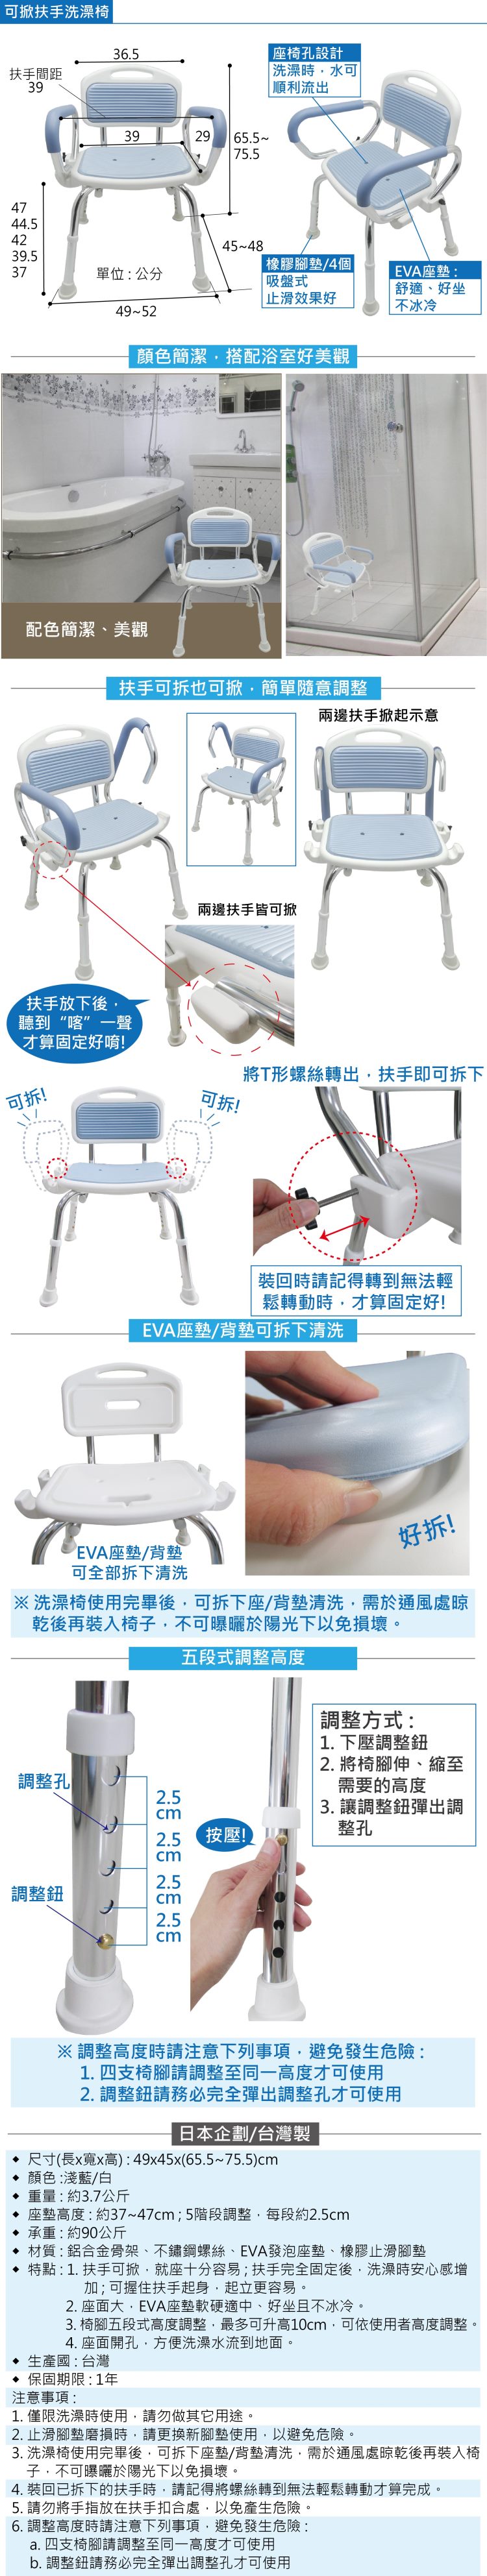 輕便洗澡椅:重量輕，舒適座墊、止滑橡膠腳墊，扶手可掀也可拆，隨意調整，不生鏽，五段調整高度。